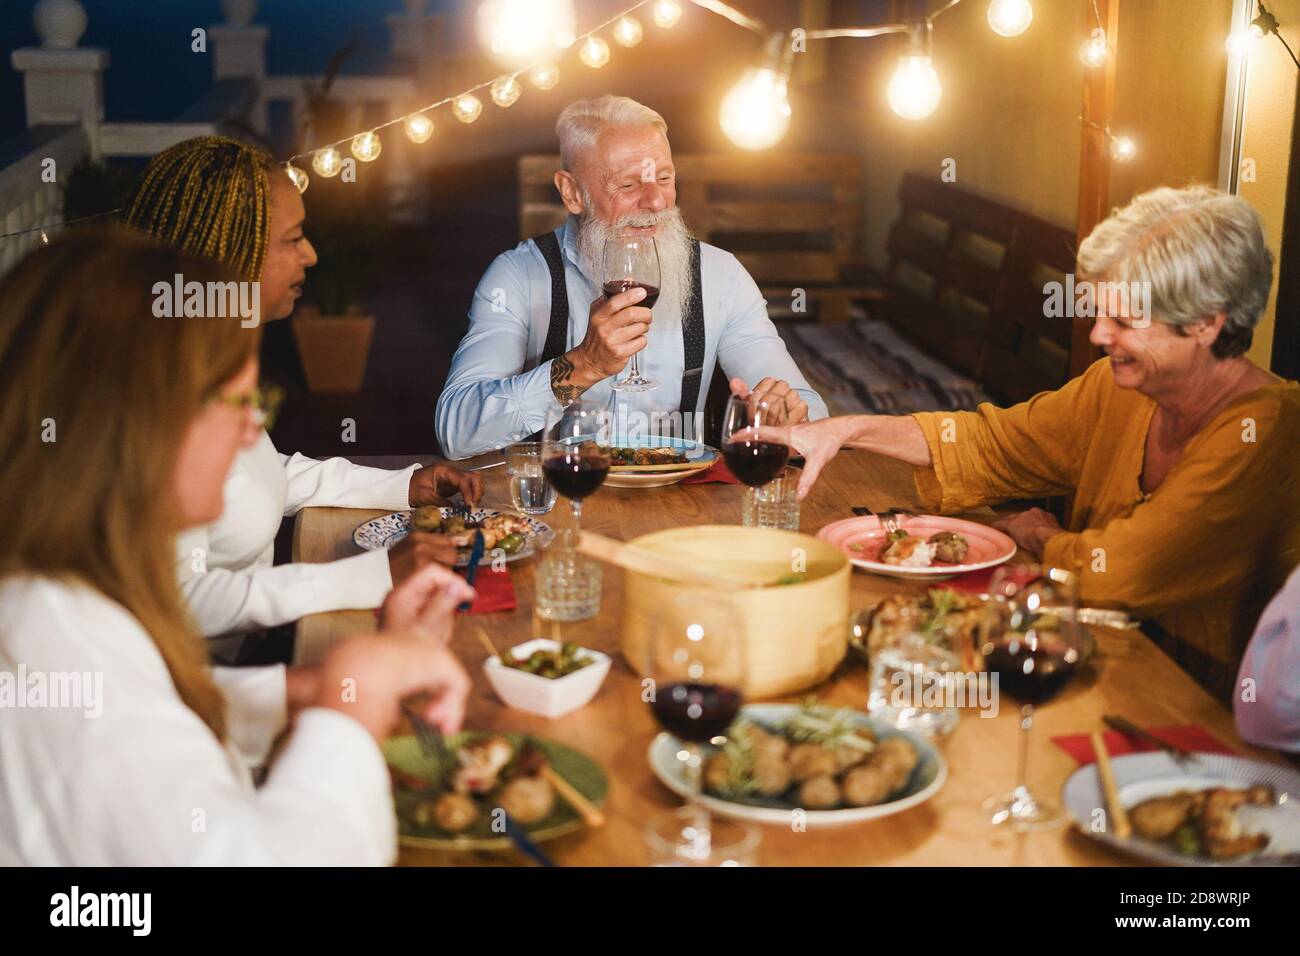 Glückliche ältere Leute, die beim Abendessen auf der Terrasse Spaß hatten - multirassisch Friends Eating on Evening Time - Fokus auf Hipster Mann Gesicht Stockfoto